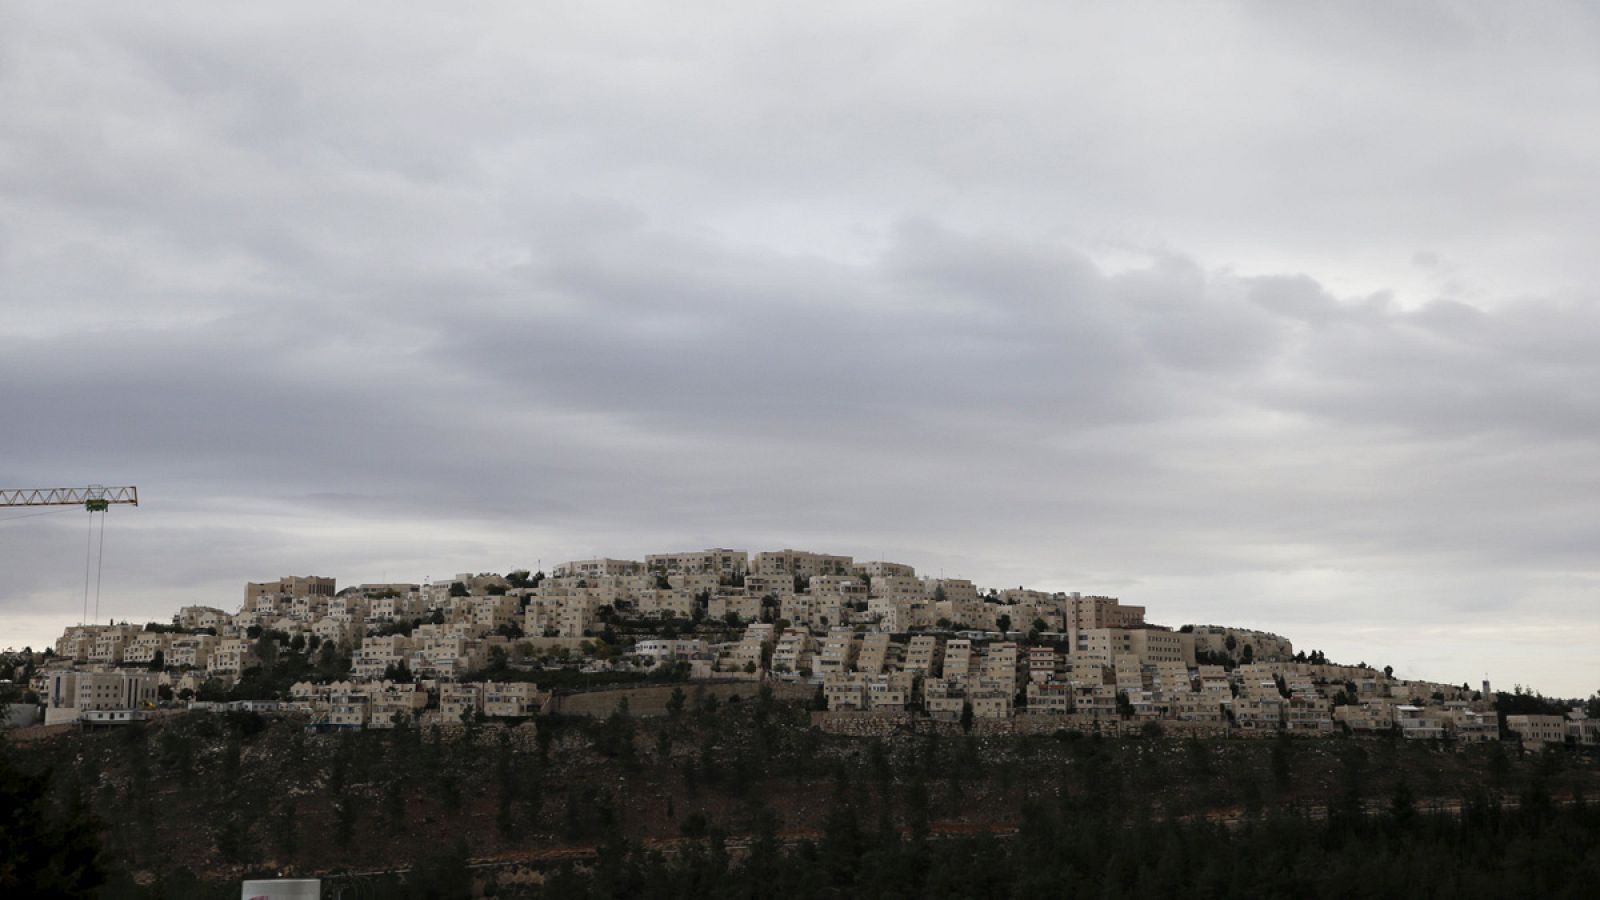 Vista general del asentamiento de Ramat Shlomo